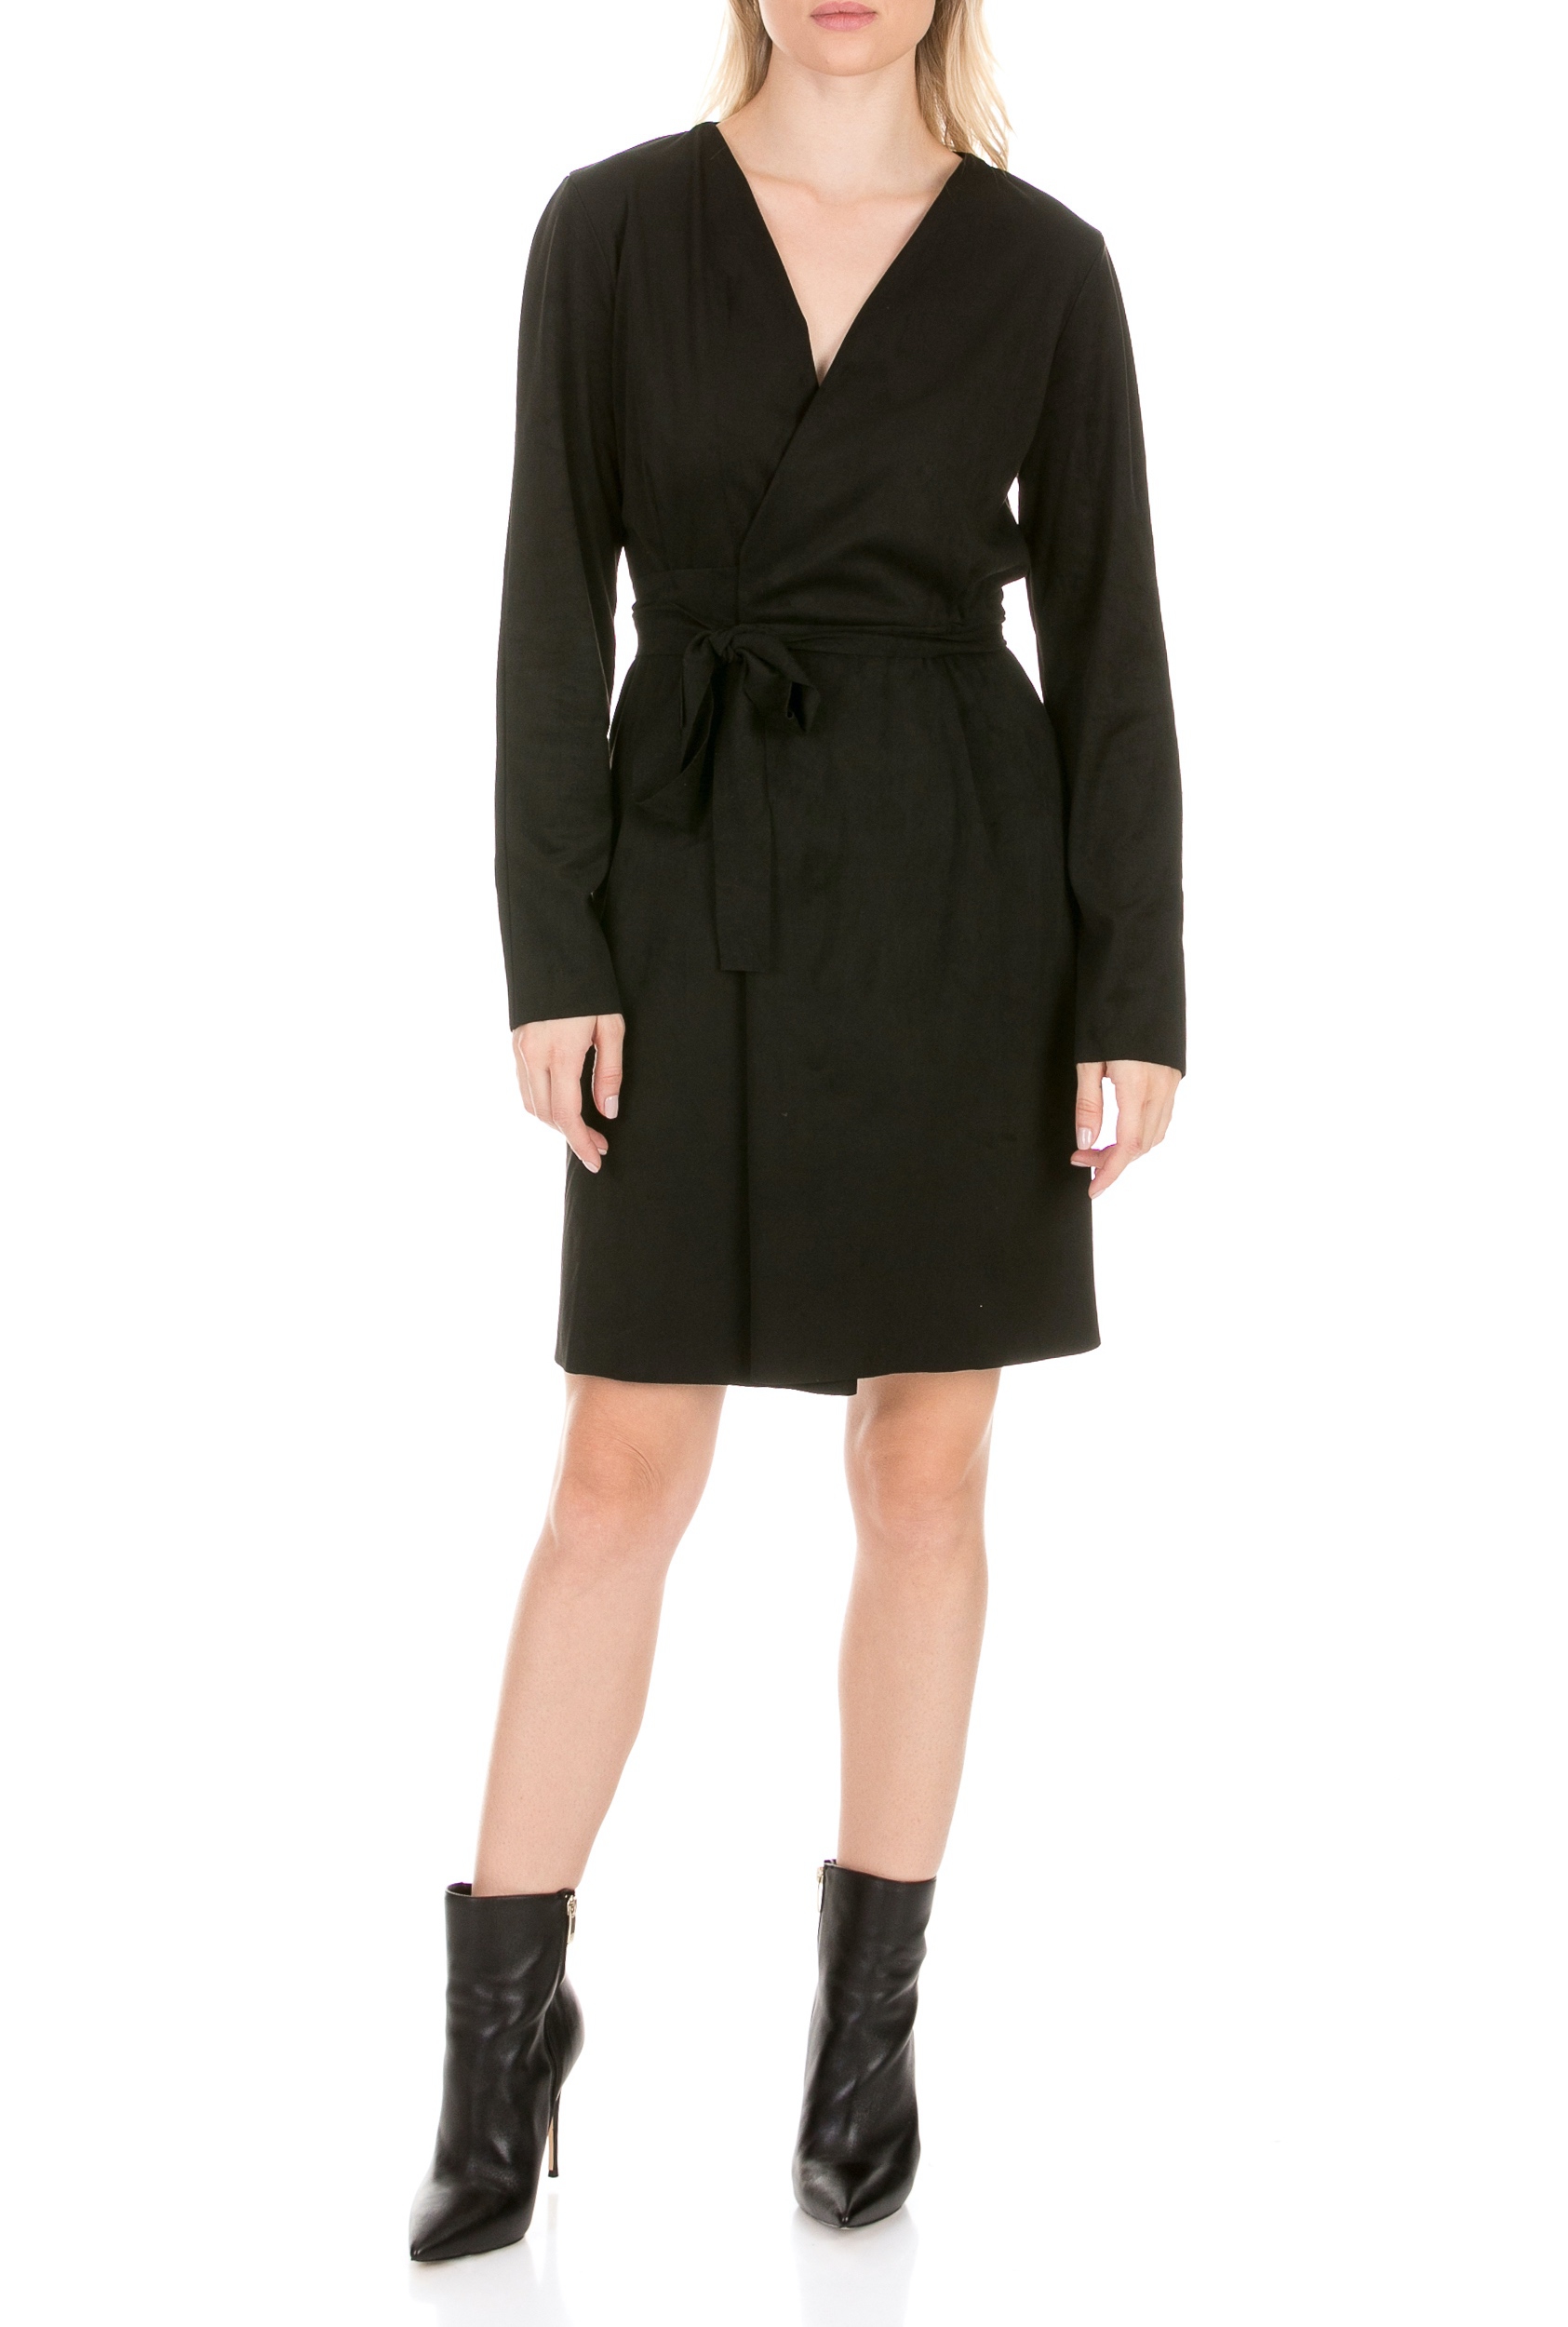 Γυναικεία/Ρούχα/Φορέματα/Μίνι LA DOLLS - Γυναικείο φόρεμα LA DOLLS SKIN DRESS μαύρο